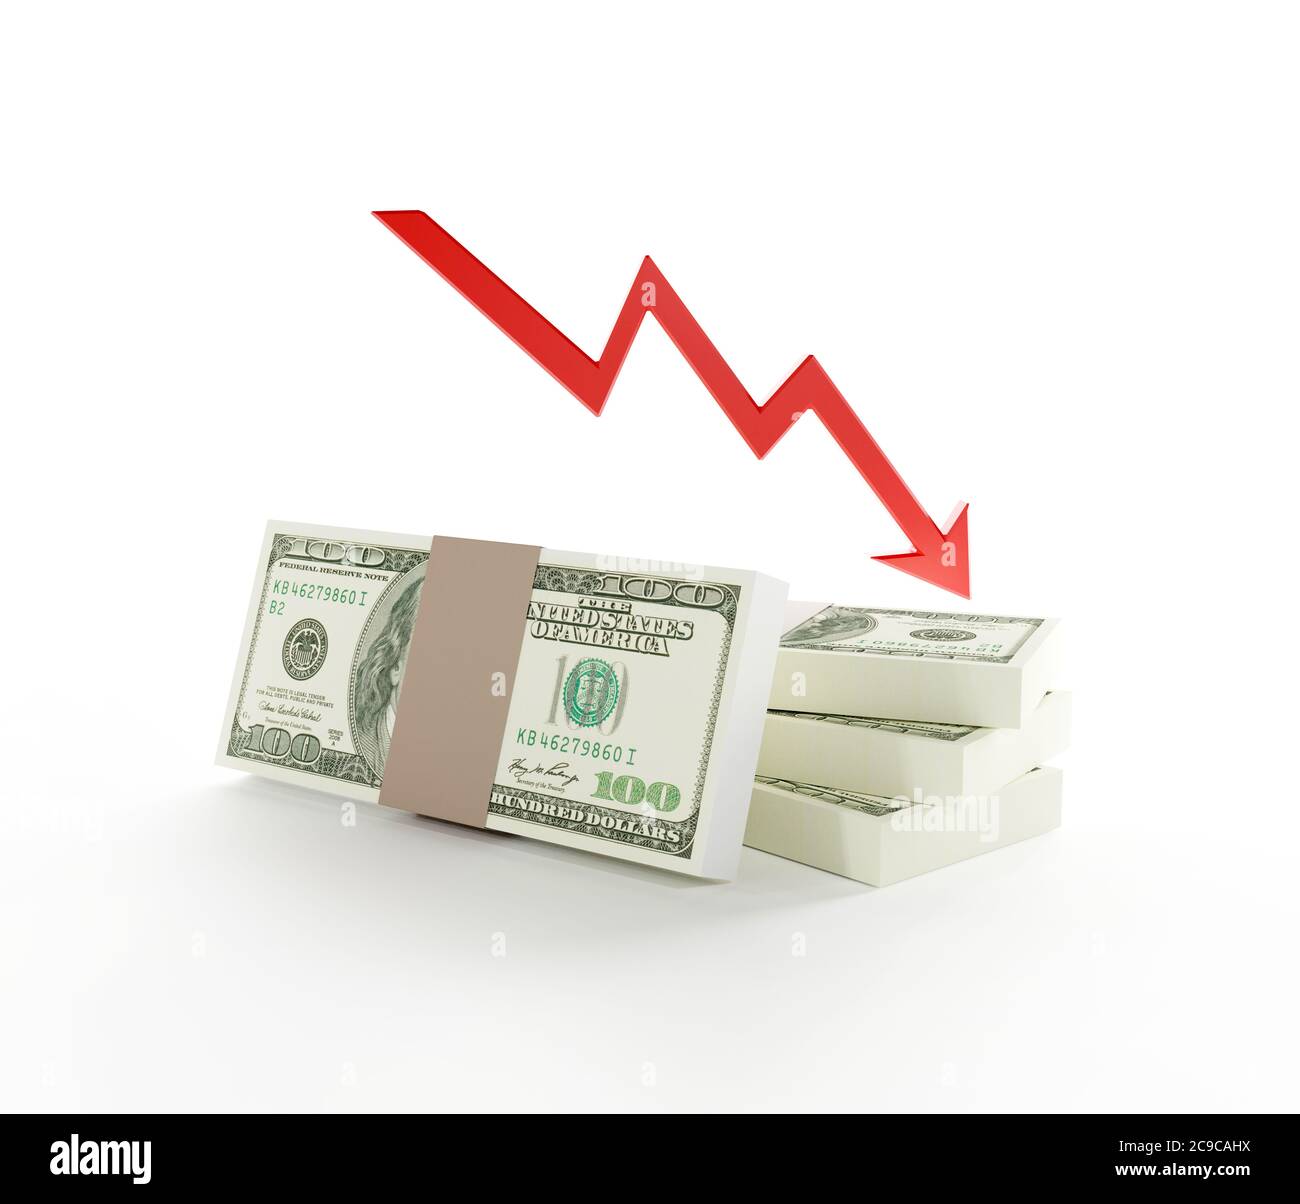 Sinkender Wert der Währung. Analyse und Strategie im Finanzgeschäft. Economy-Konzept in 3D-Darstellung. . Hochwertige 3d-Illustration Stockfoto